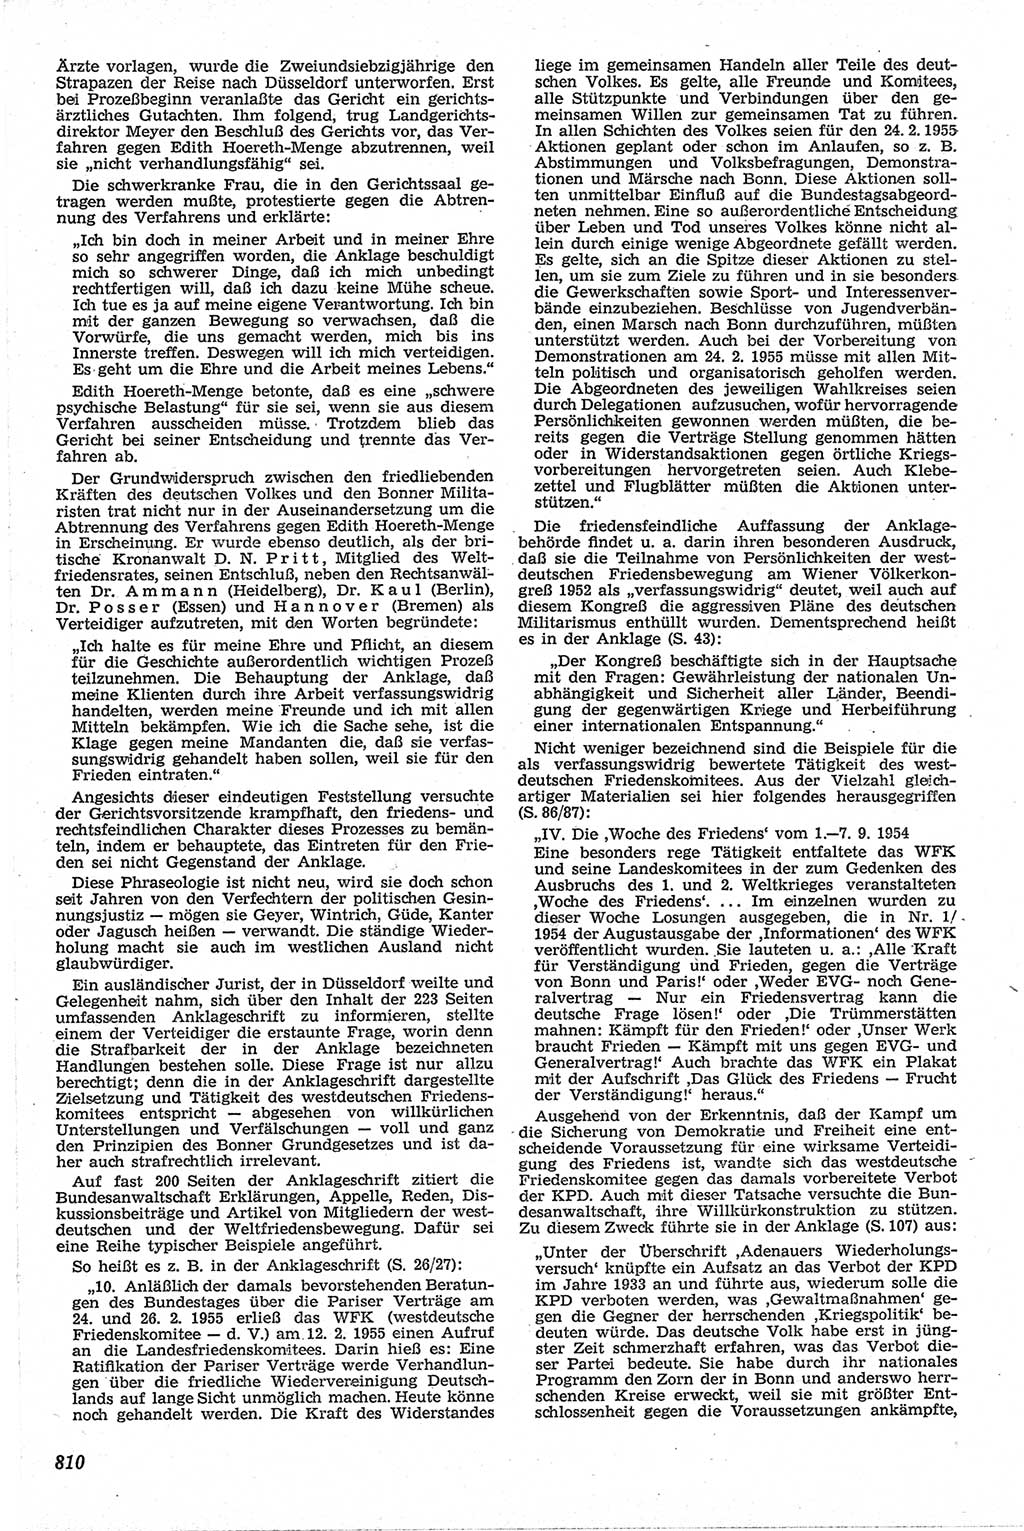 Neue Justiz (NJ), Zeitschrift für Recht und Rechtswissenschaft [Deutsche Demokratische Republik (DDR)], 13. Jahrgang 1959, Seite 810 (NJ DDR 1959, S. 810)